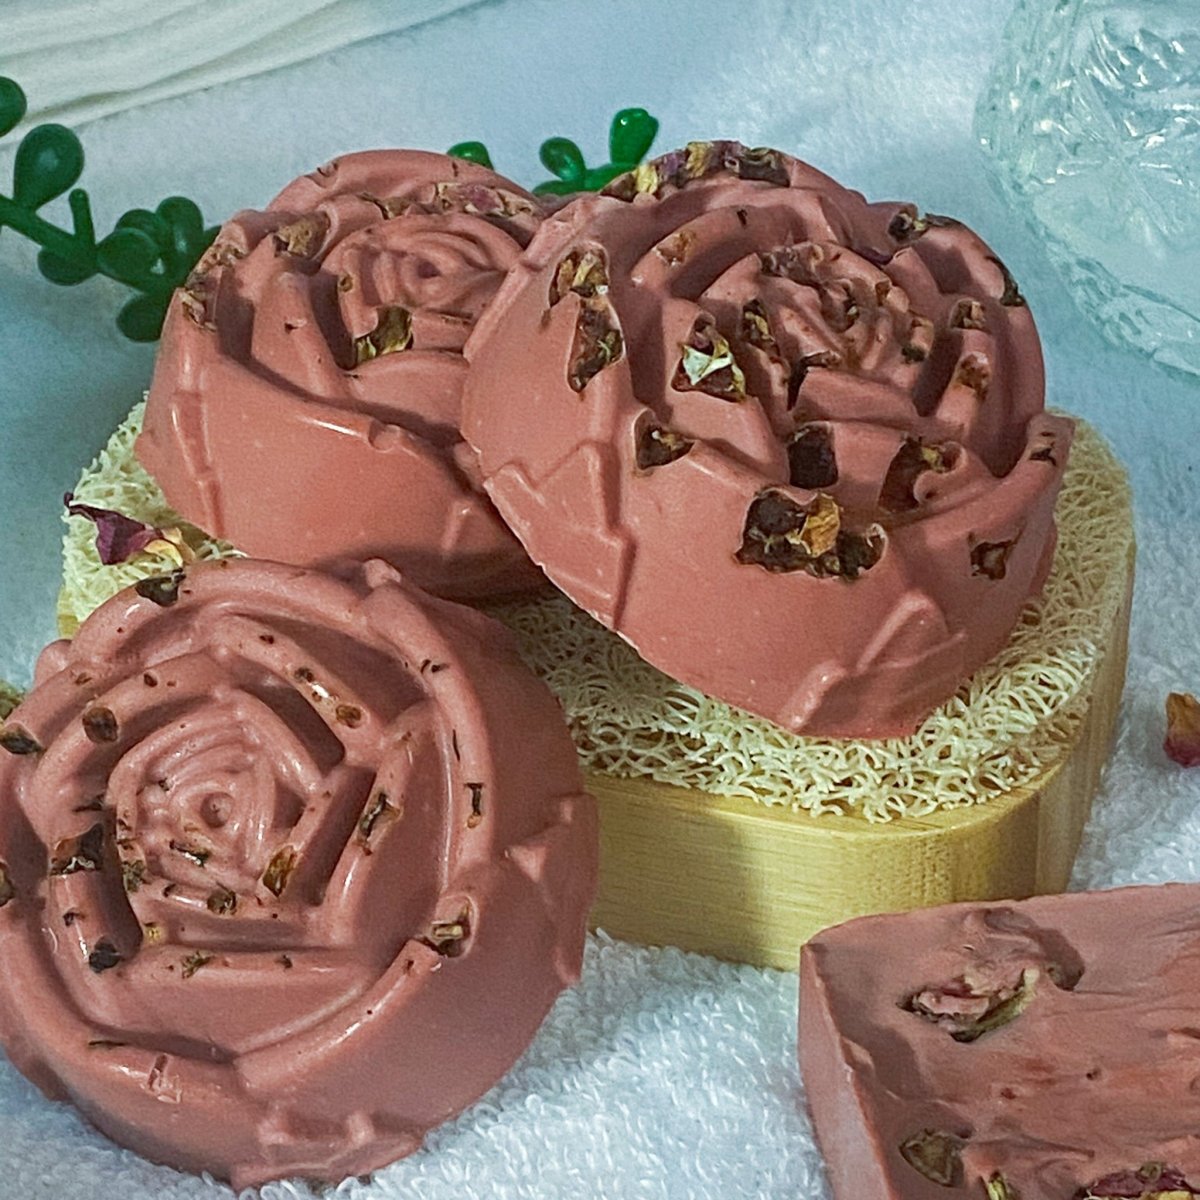 Blossoming Rose Soap 🌹 - PurBalm.com